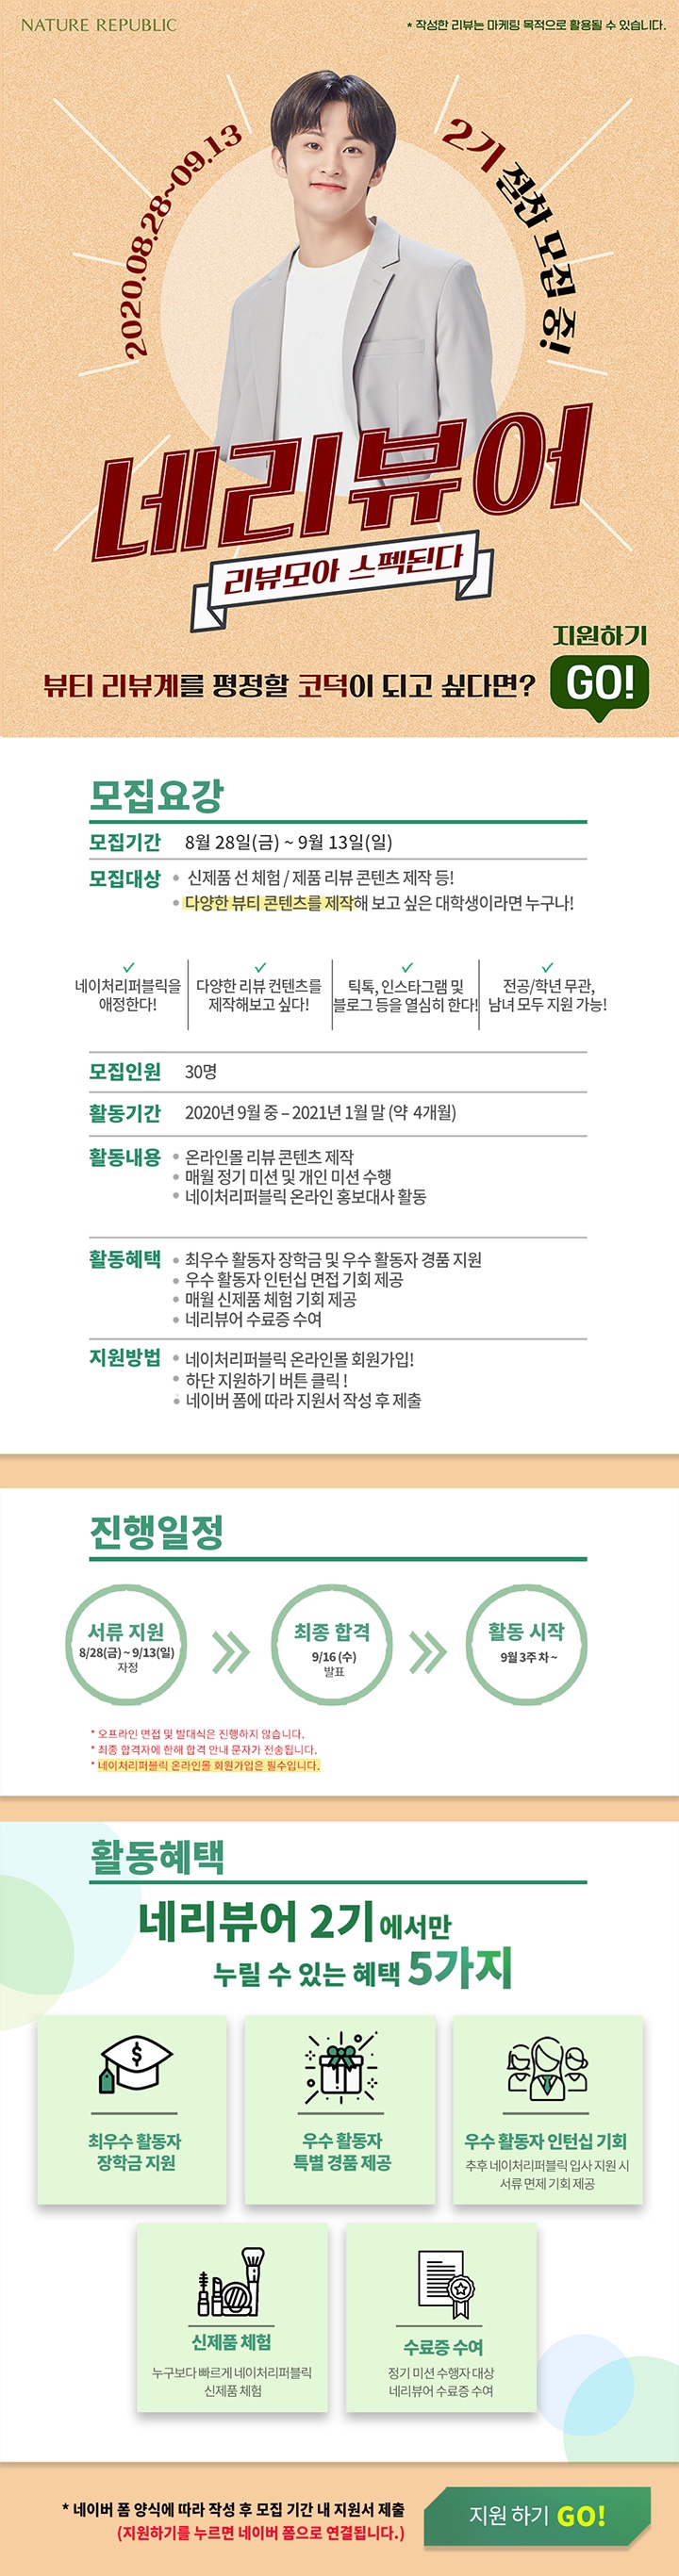 네이쳐리퍼블릭 네리뷰어 2기 모집 (~9/13)